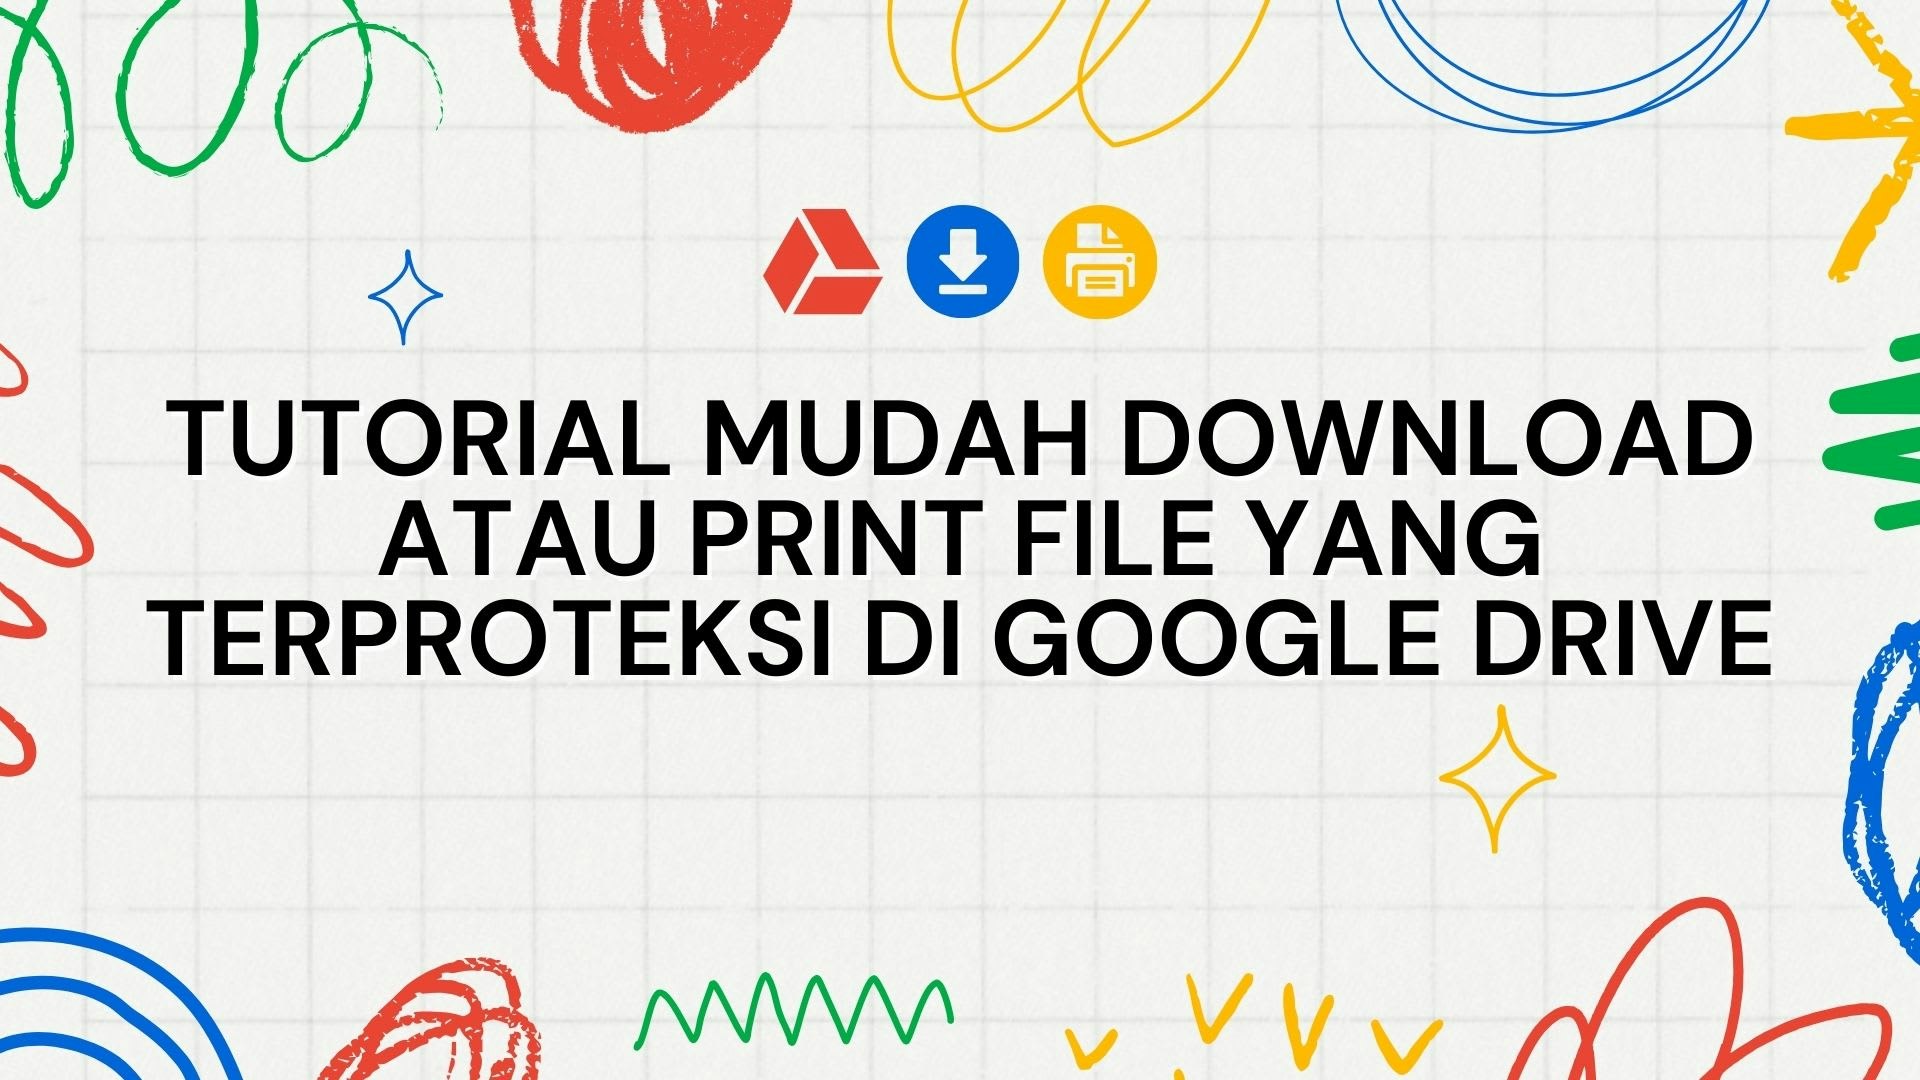 Tutorial Mudah Download atau Print File yang Terproteksi di Google Drive